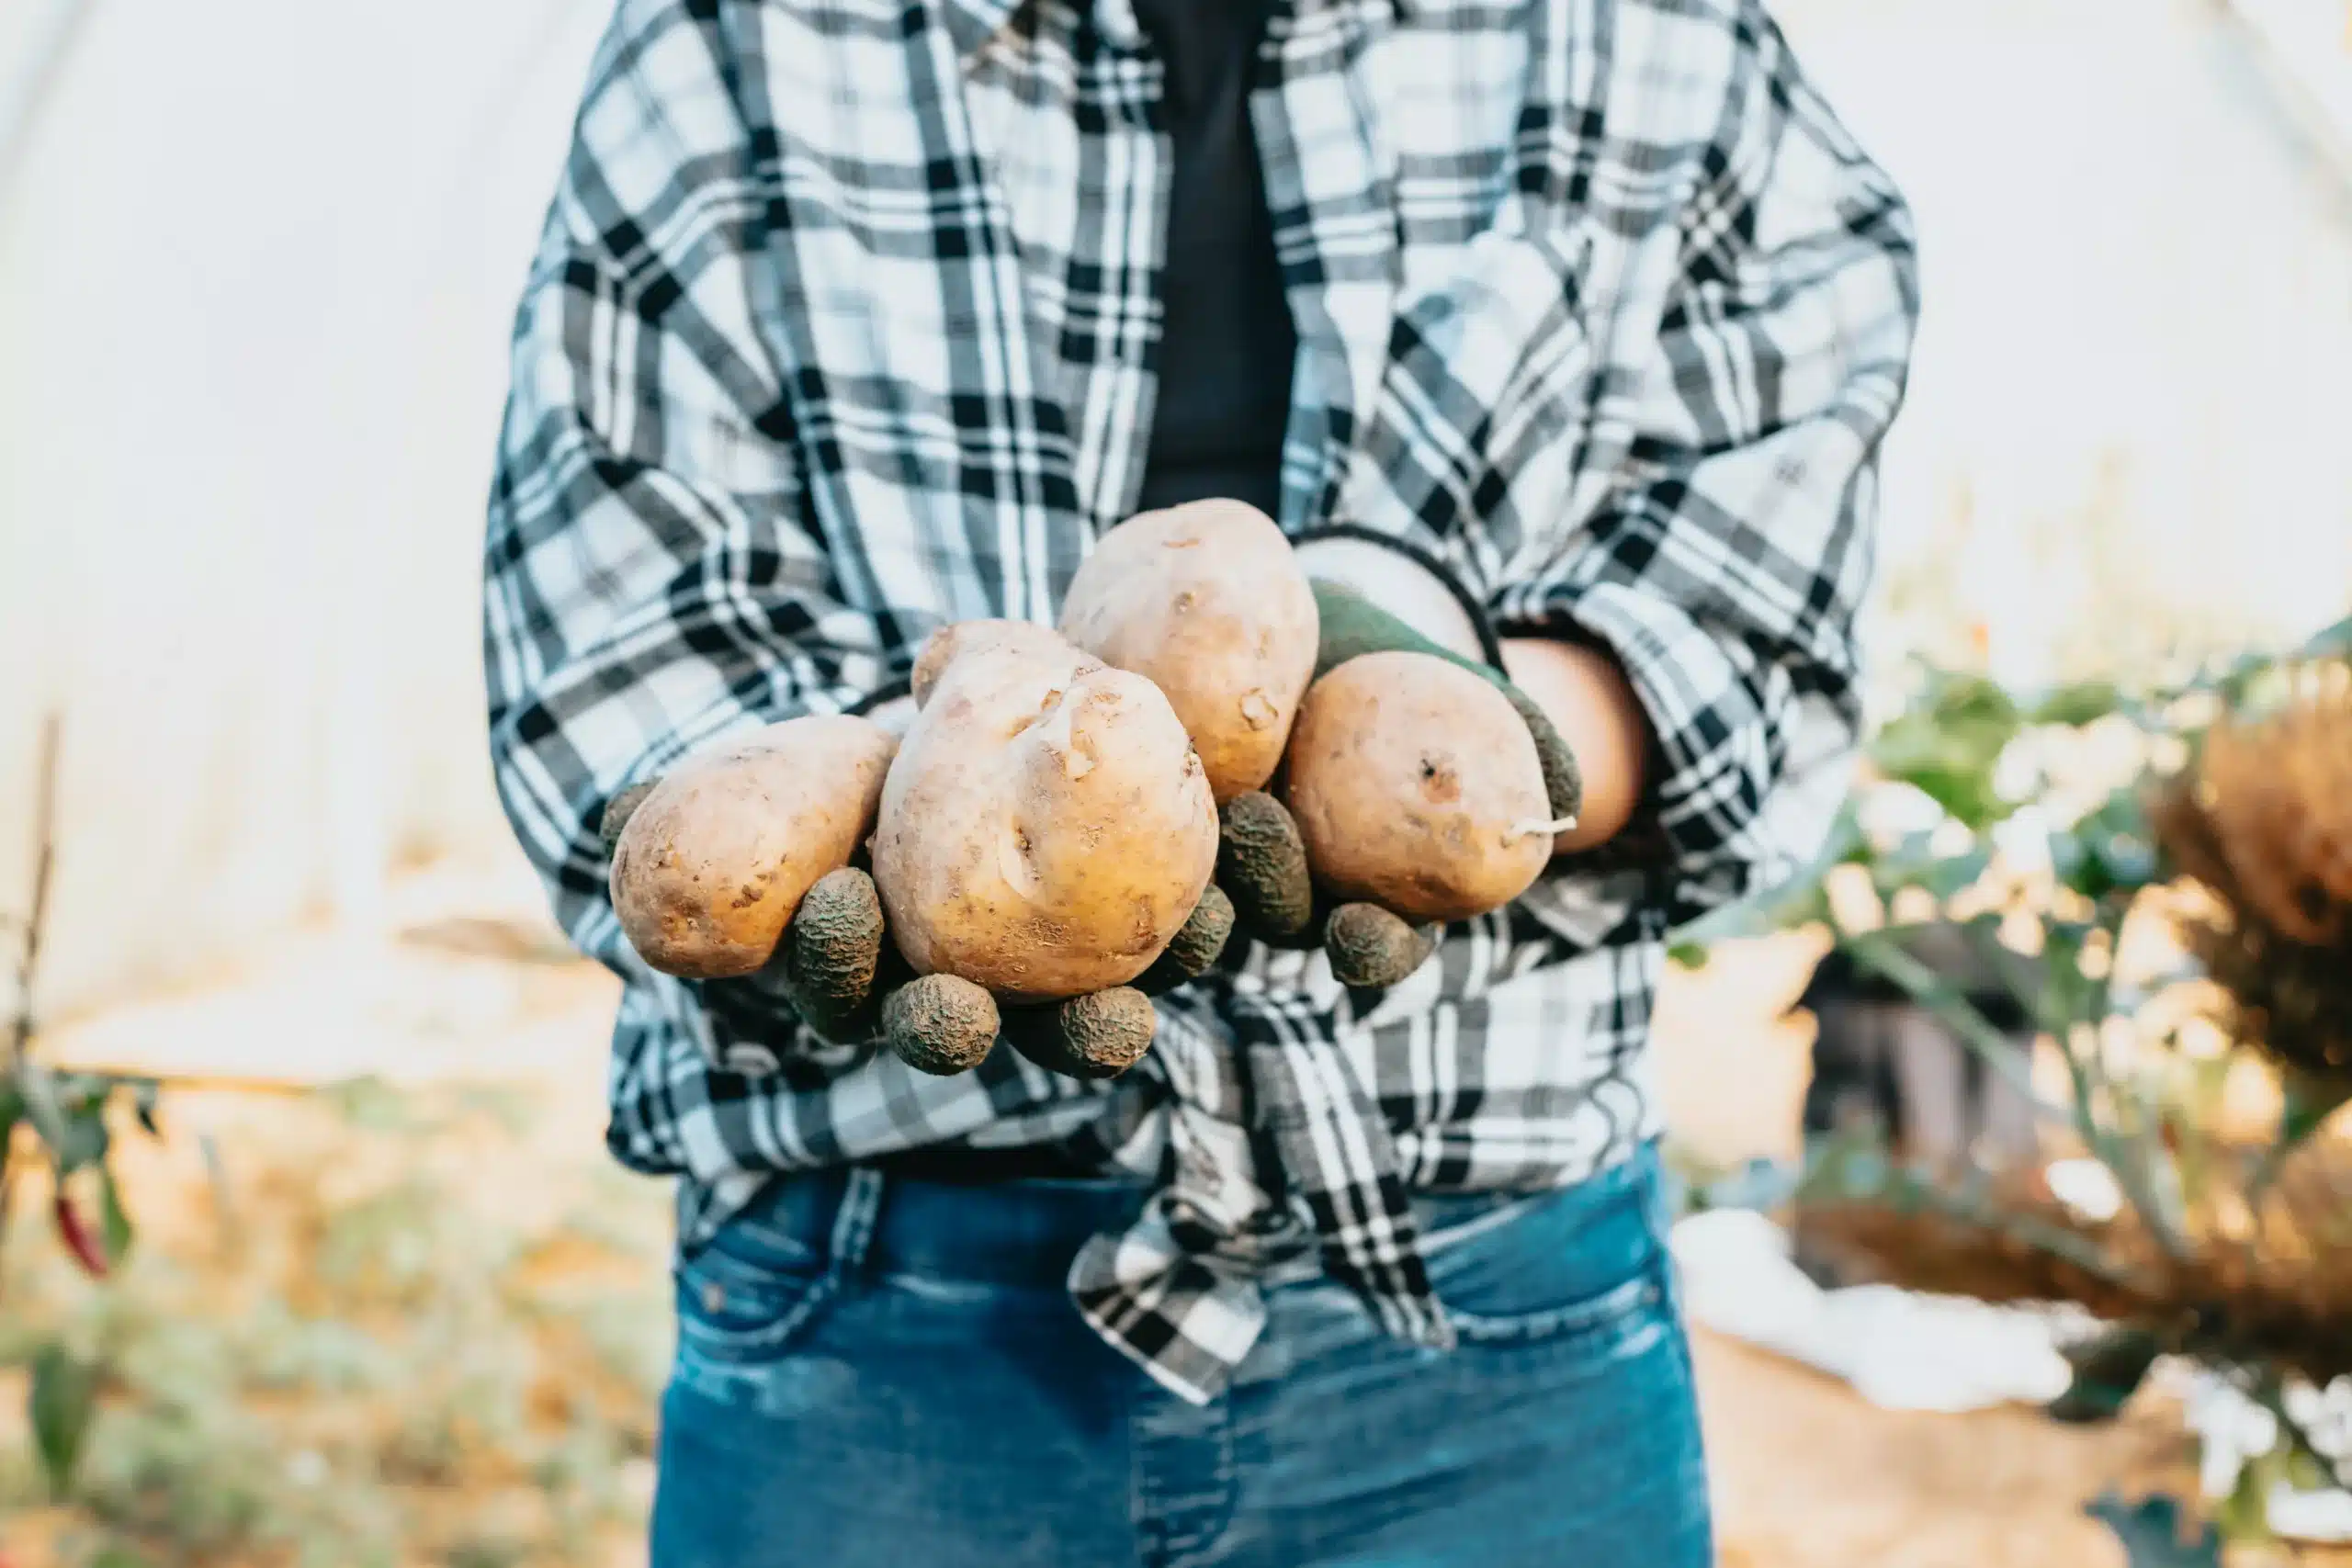 Homem mostra batata fazendo referência à agricultura familiar